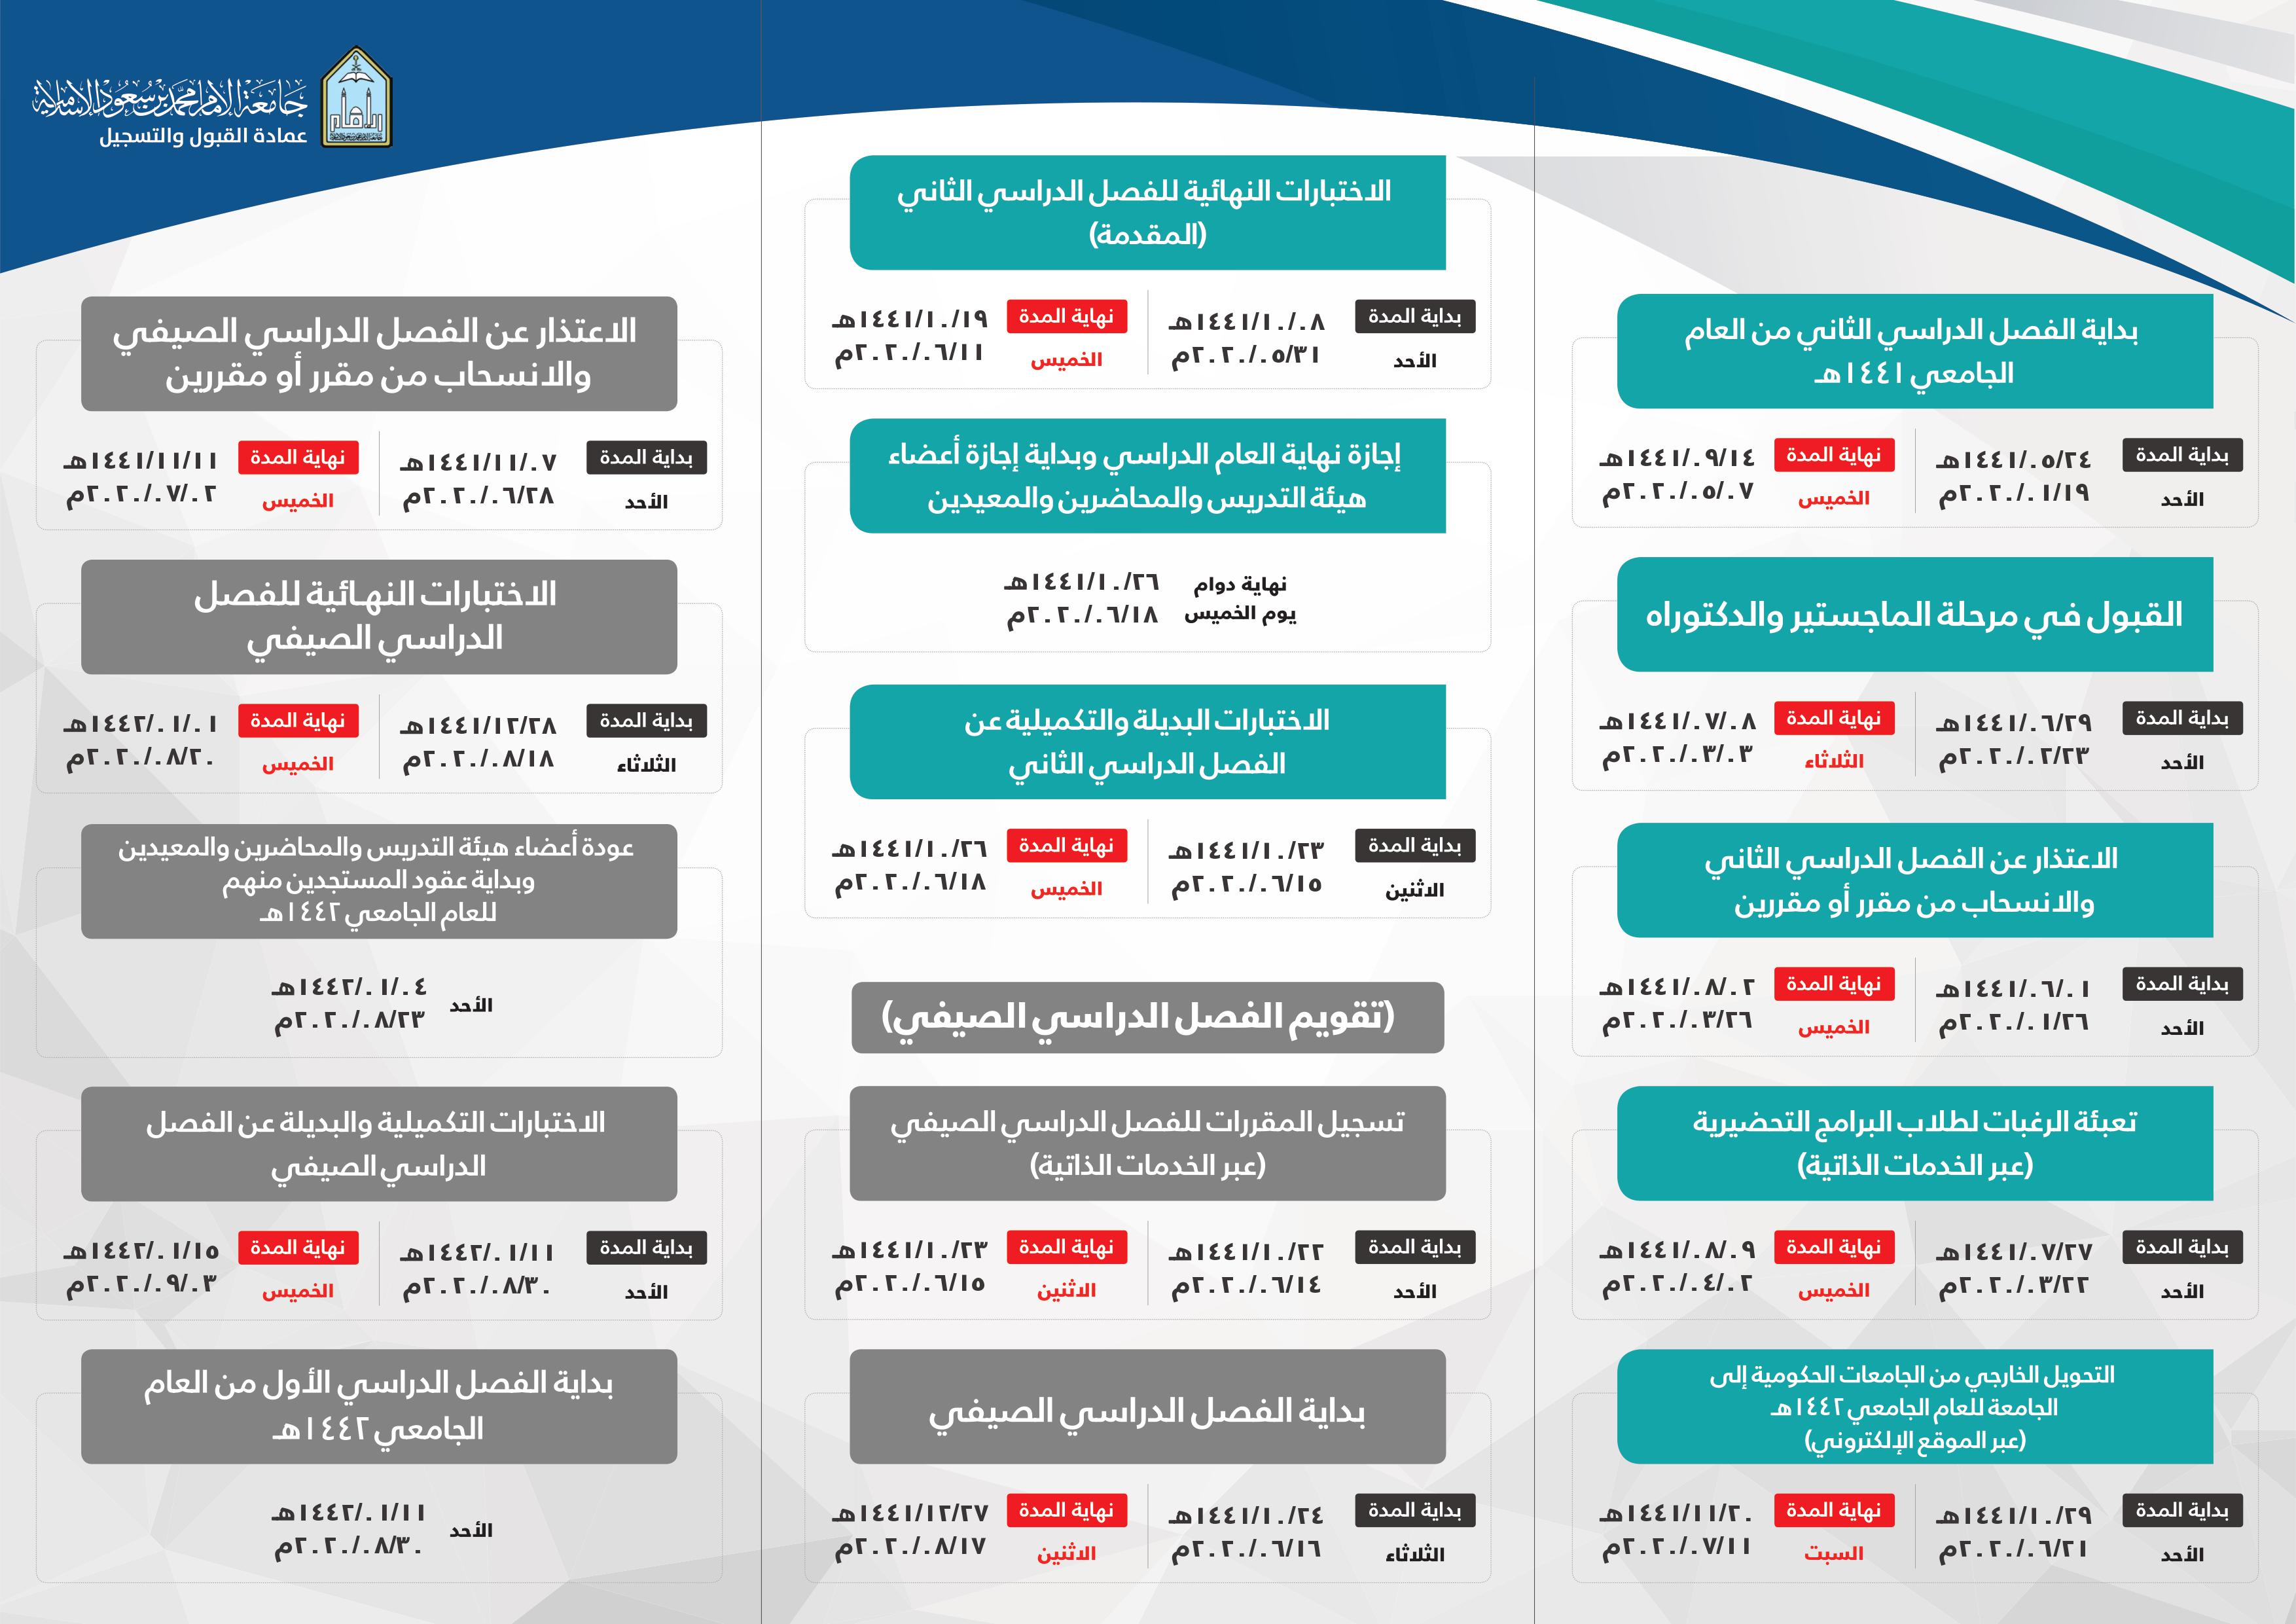 جامعة الامام الدراسي التقويم القبول والتسجيل